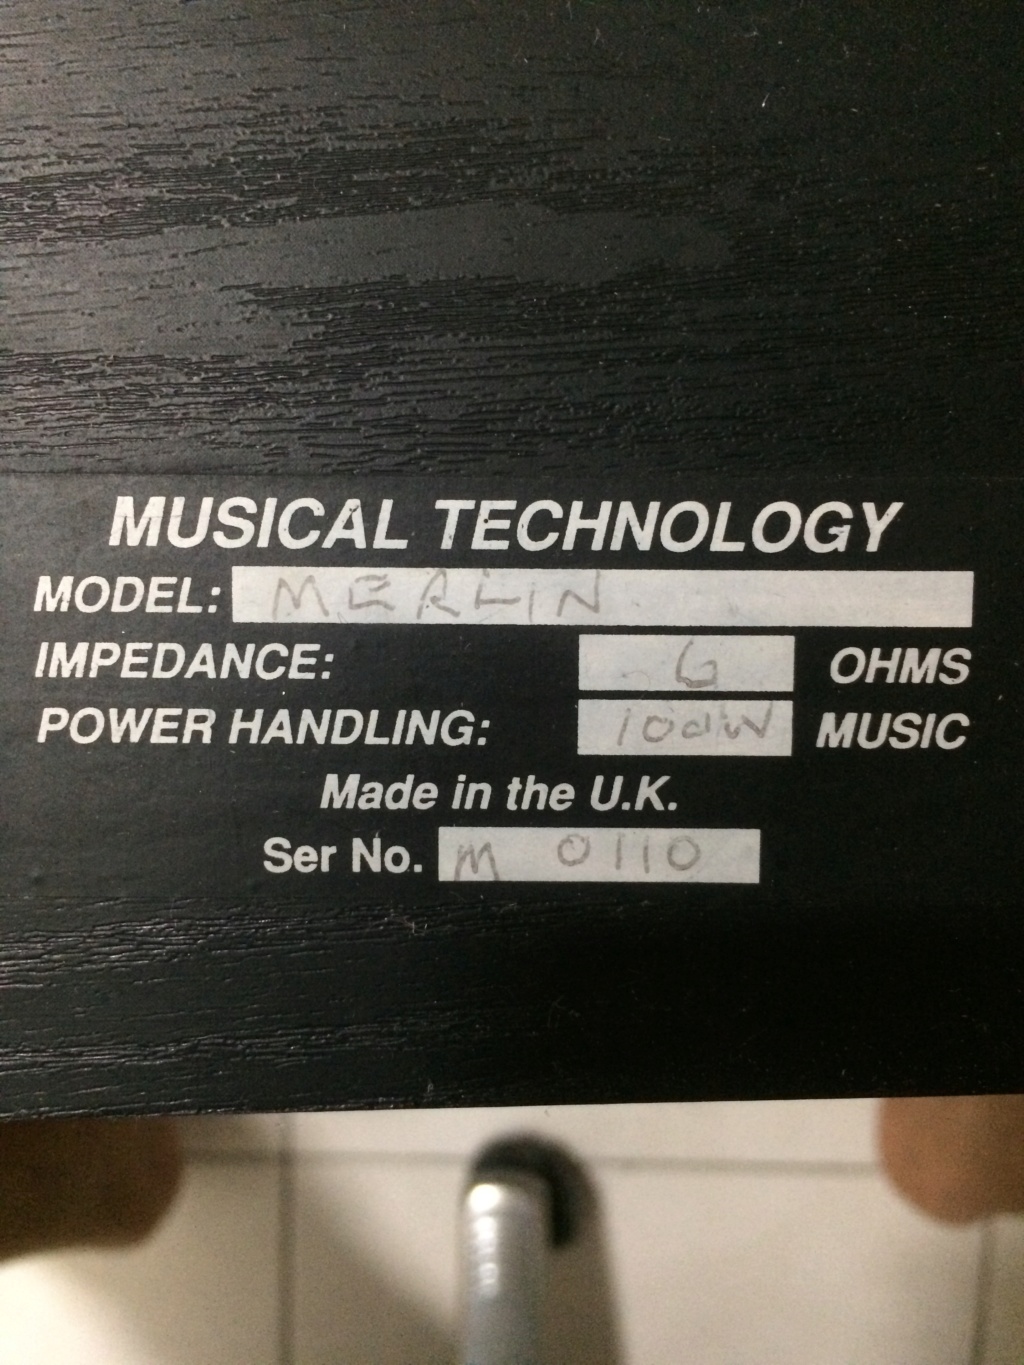 Musical Technology (MT) Centre Speaker F0152410